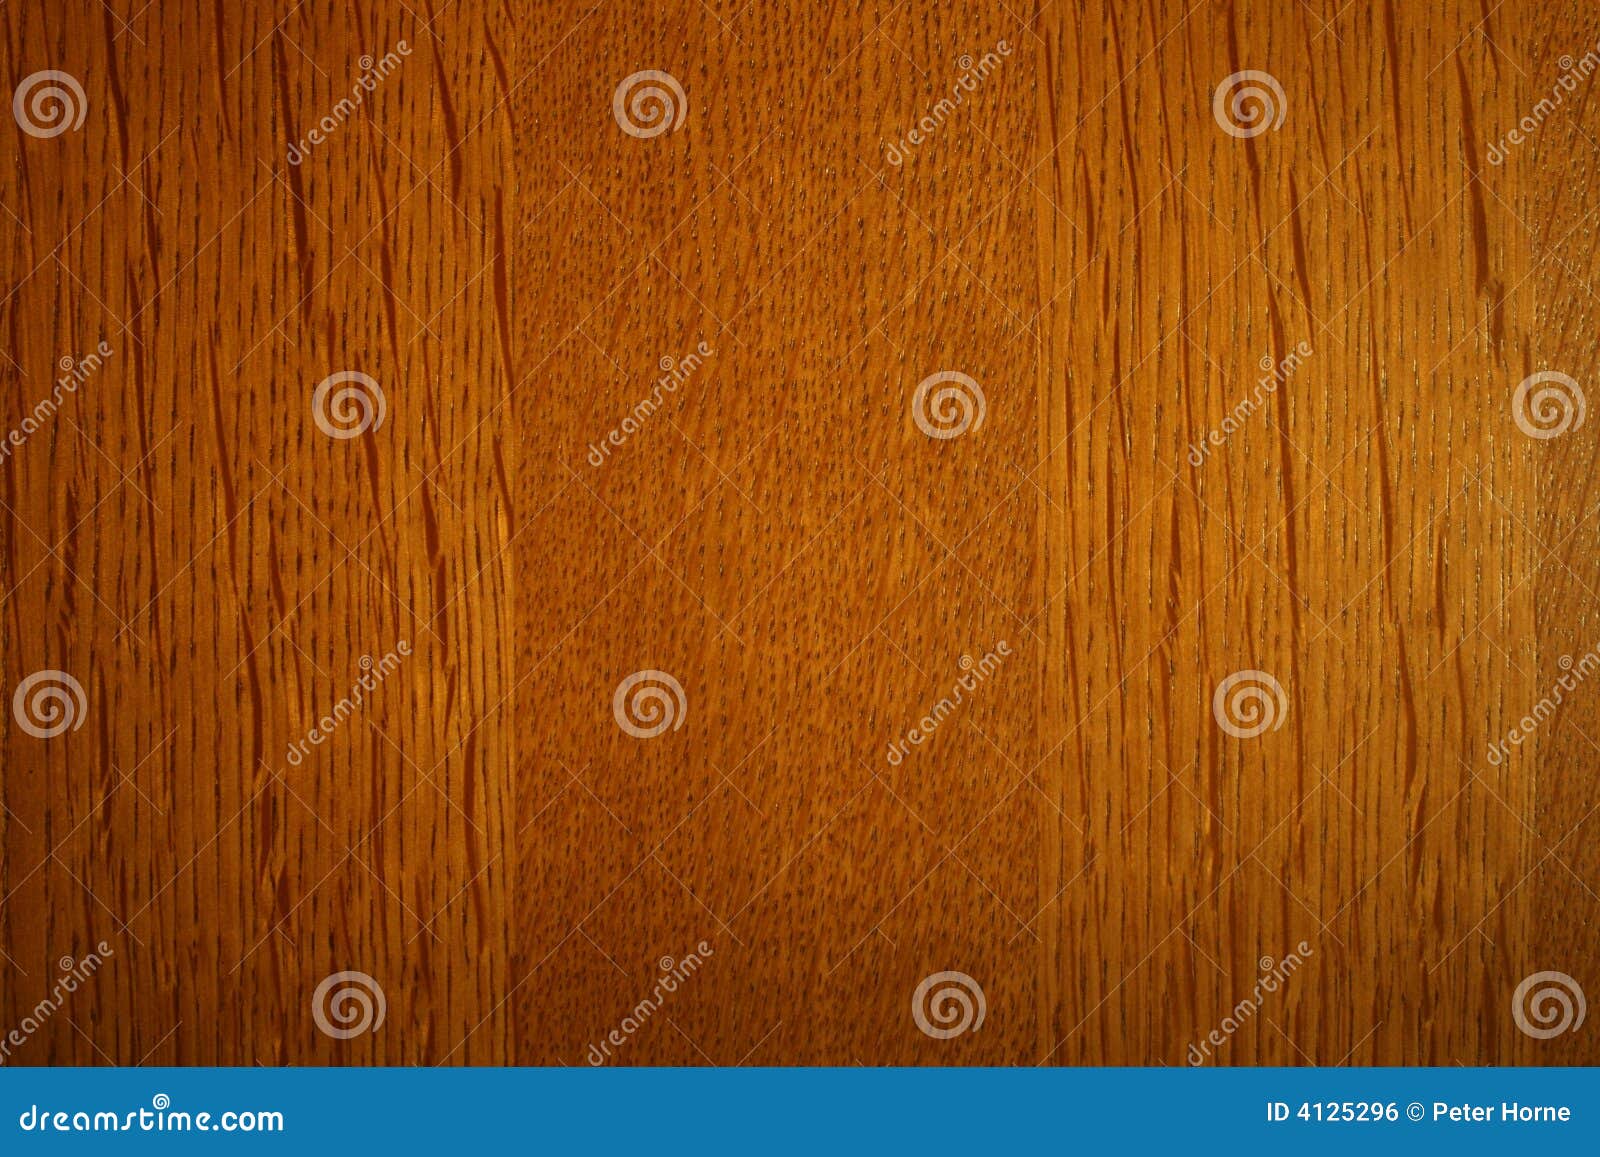 grainy wooden textures